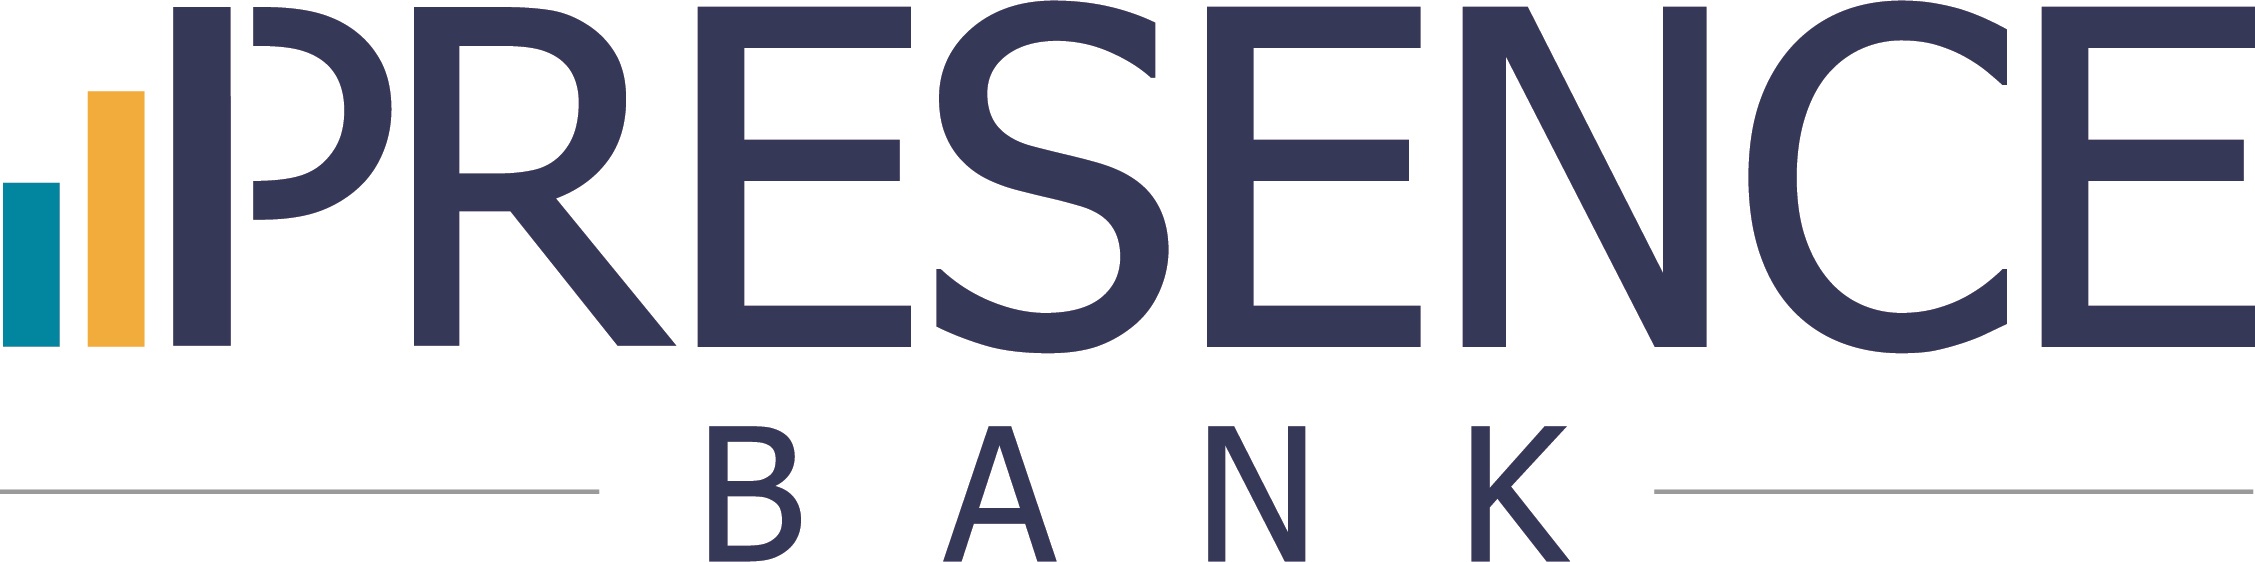 Presence Bank Logo_Full Color (002).jpg